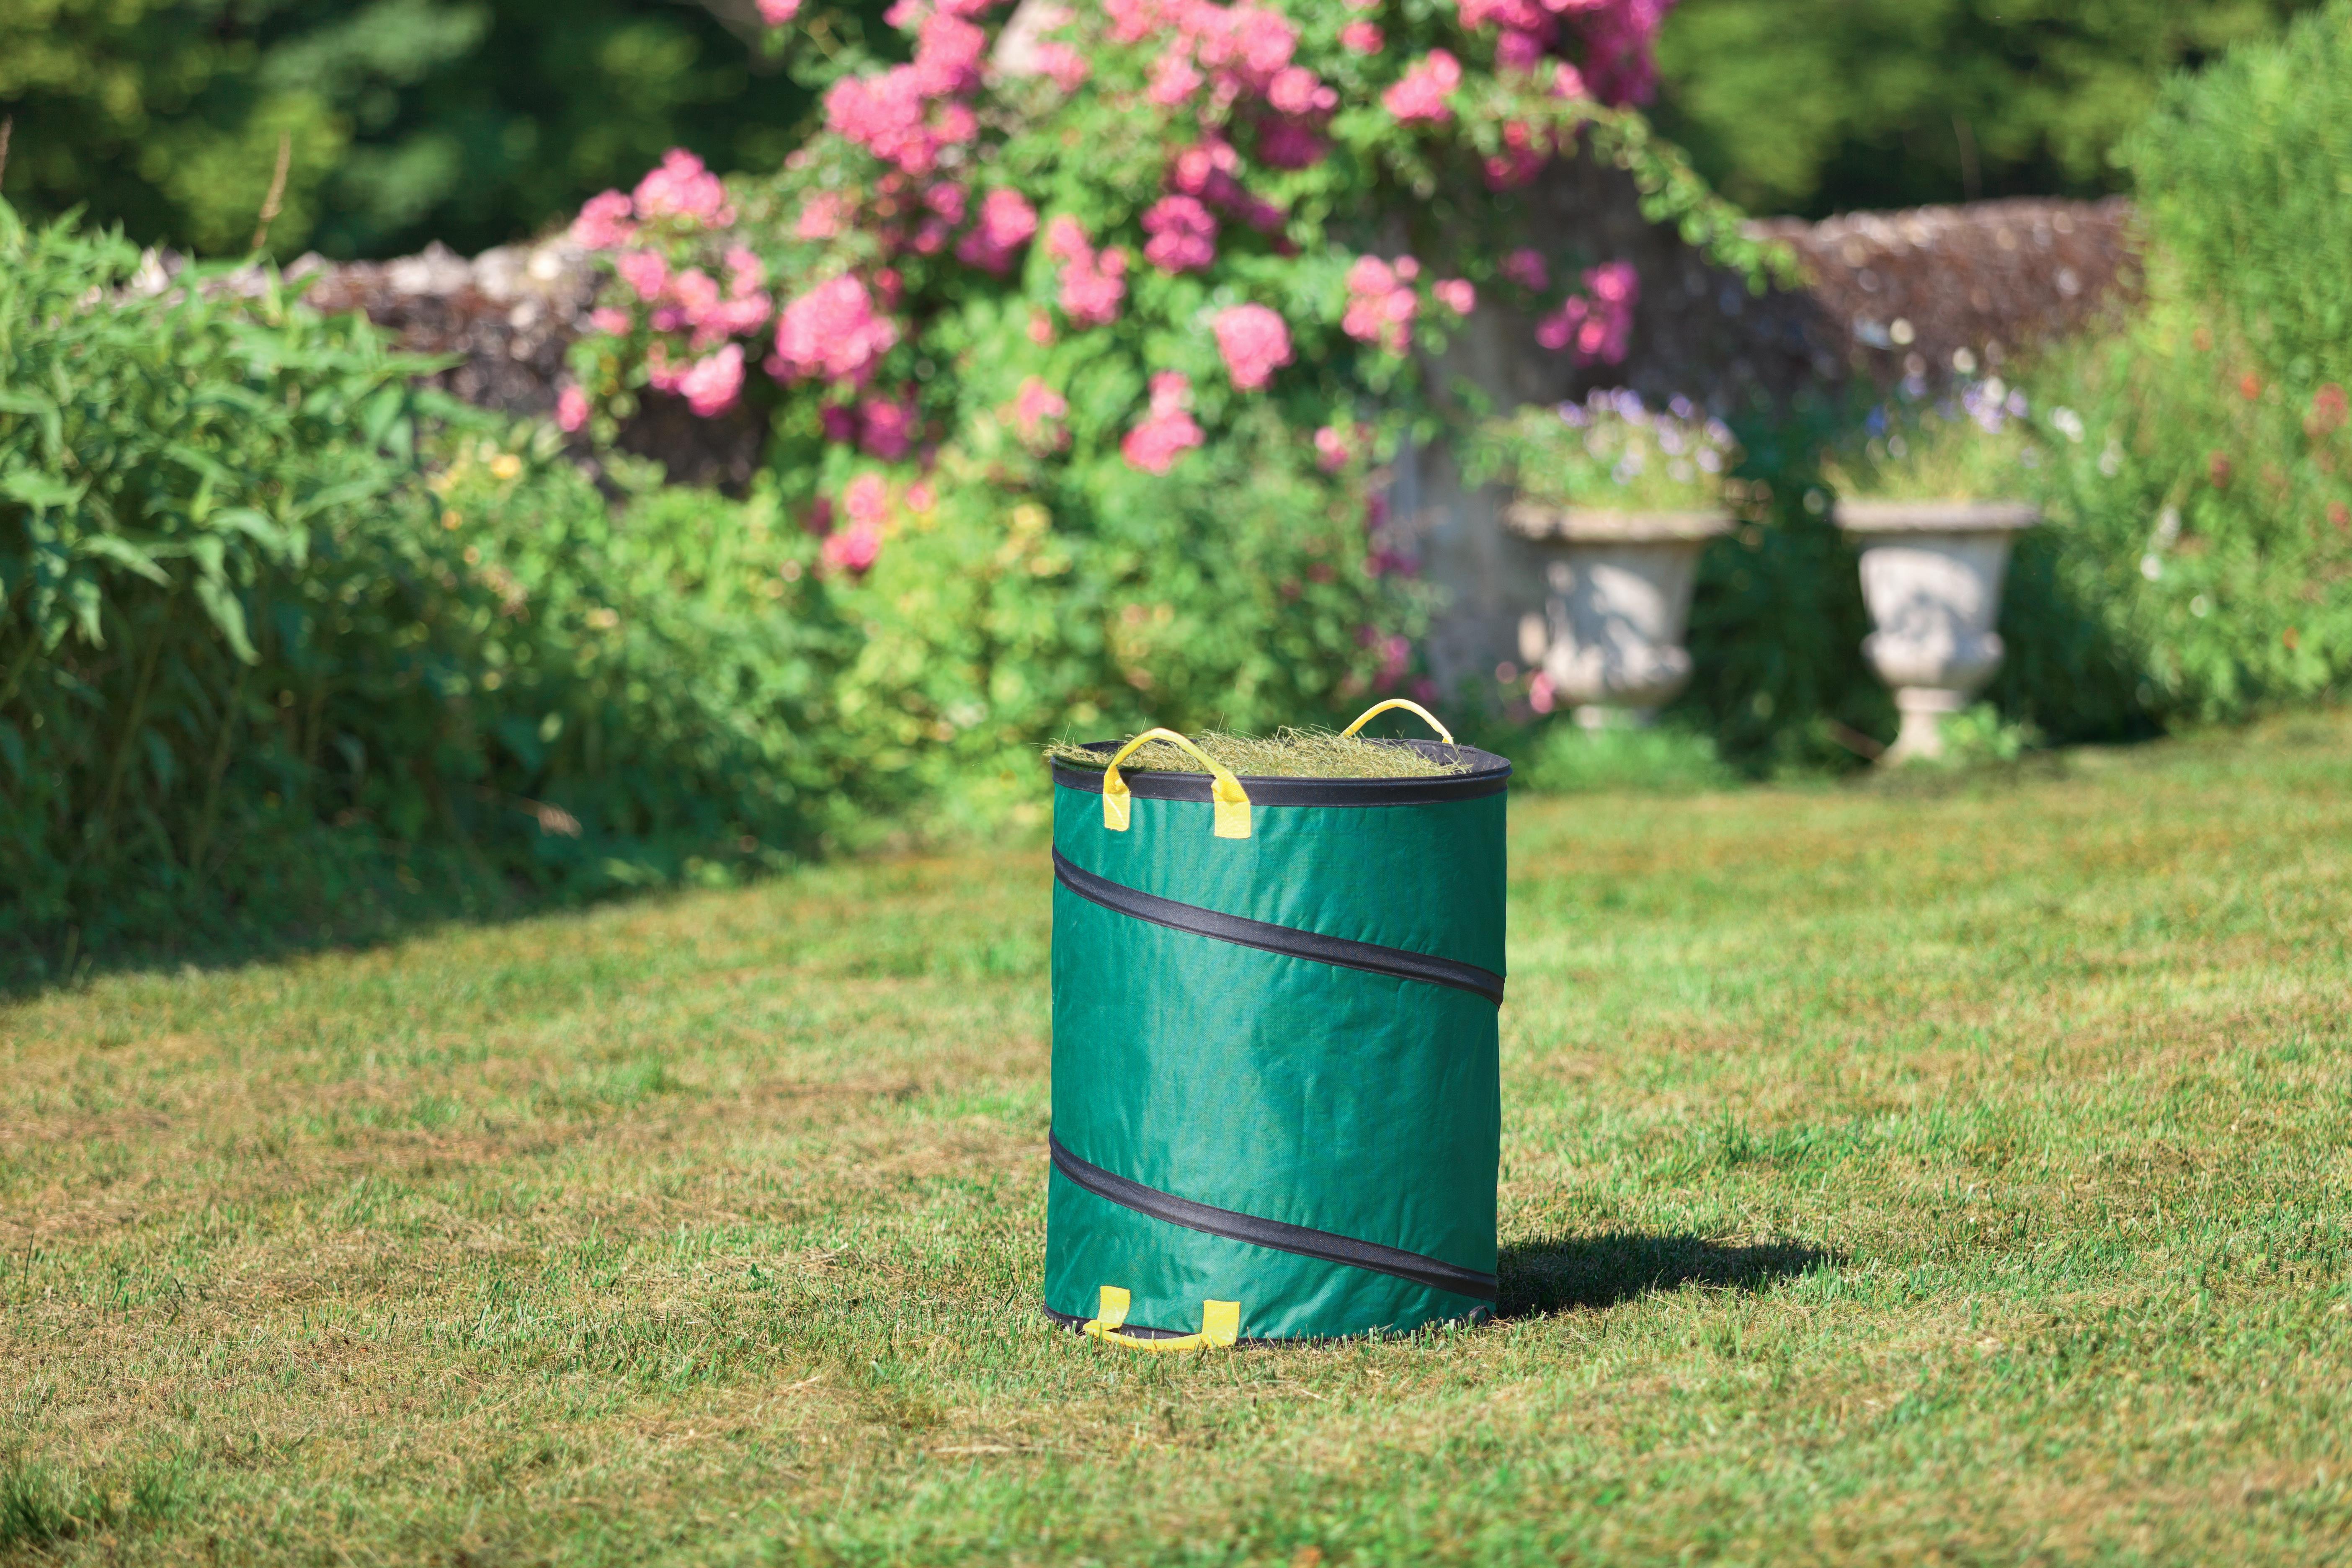 Nortène - Sac à déchets Gardenbag renforcé avec poignée Vert 149L -  Jardiland